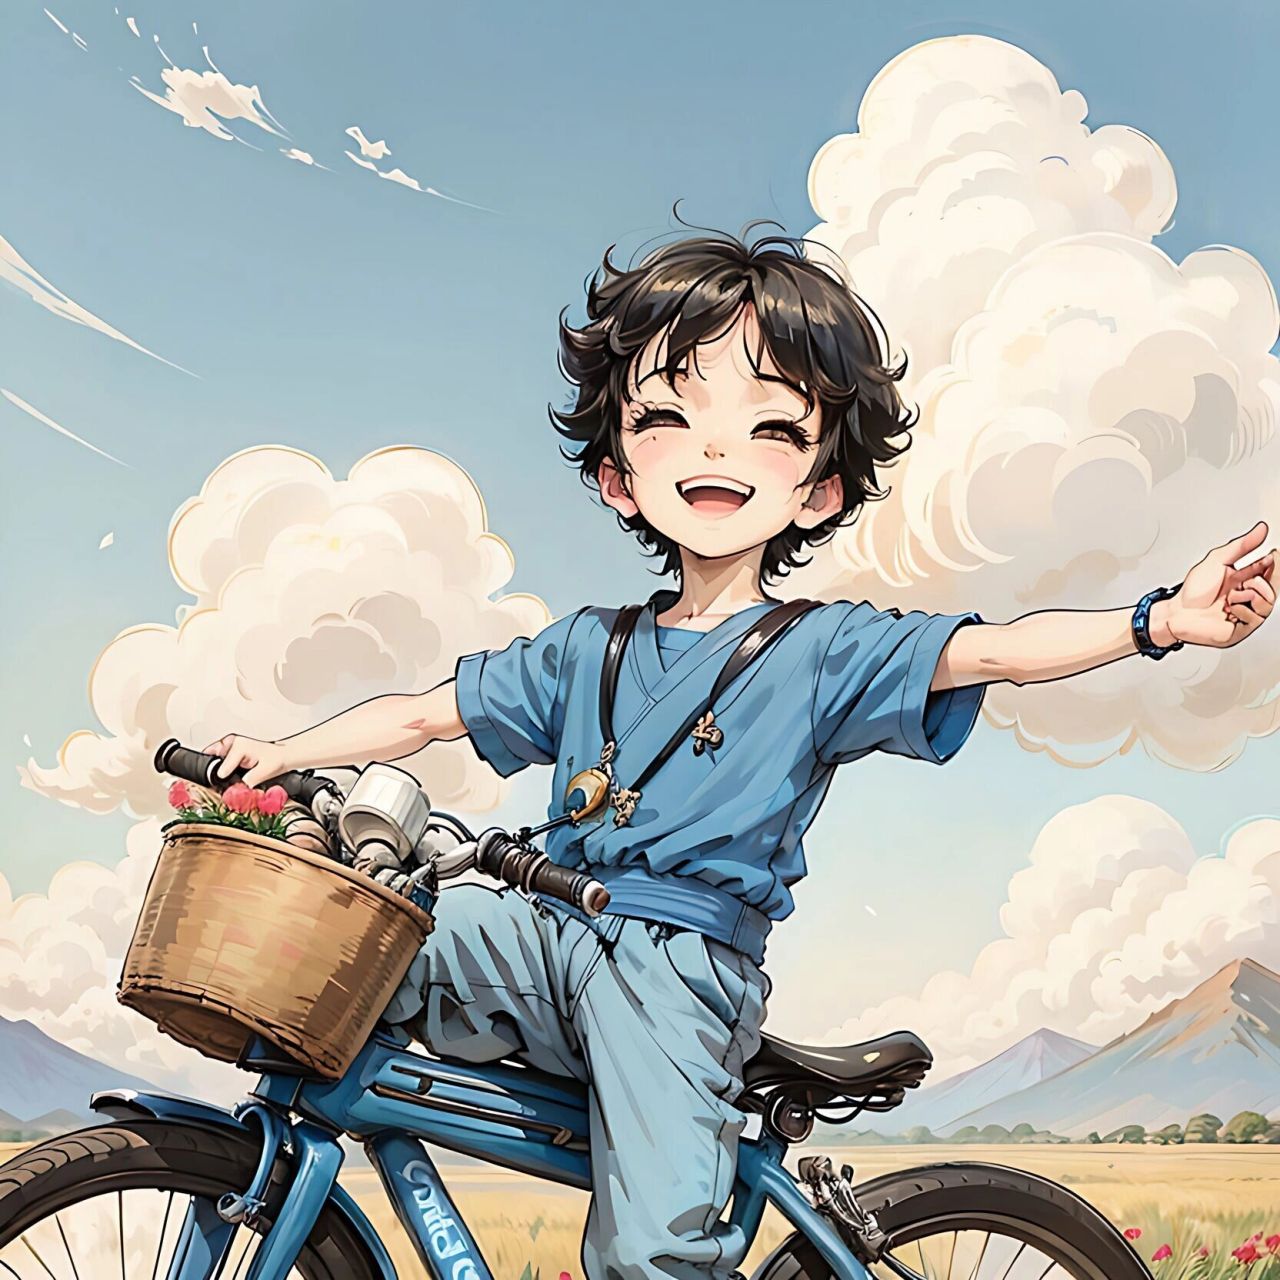 快乐的小男孩丨踩单车丨头像 小男孩正在踩单车,他的心情非常愉快